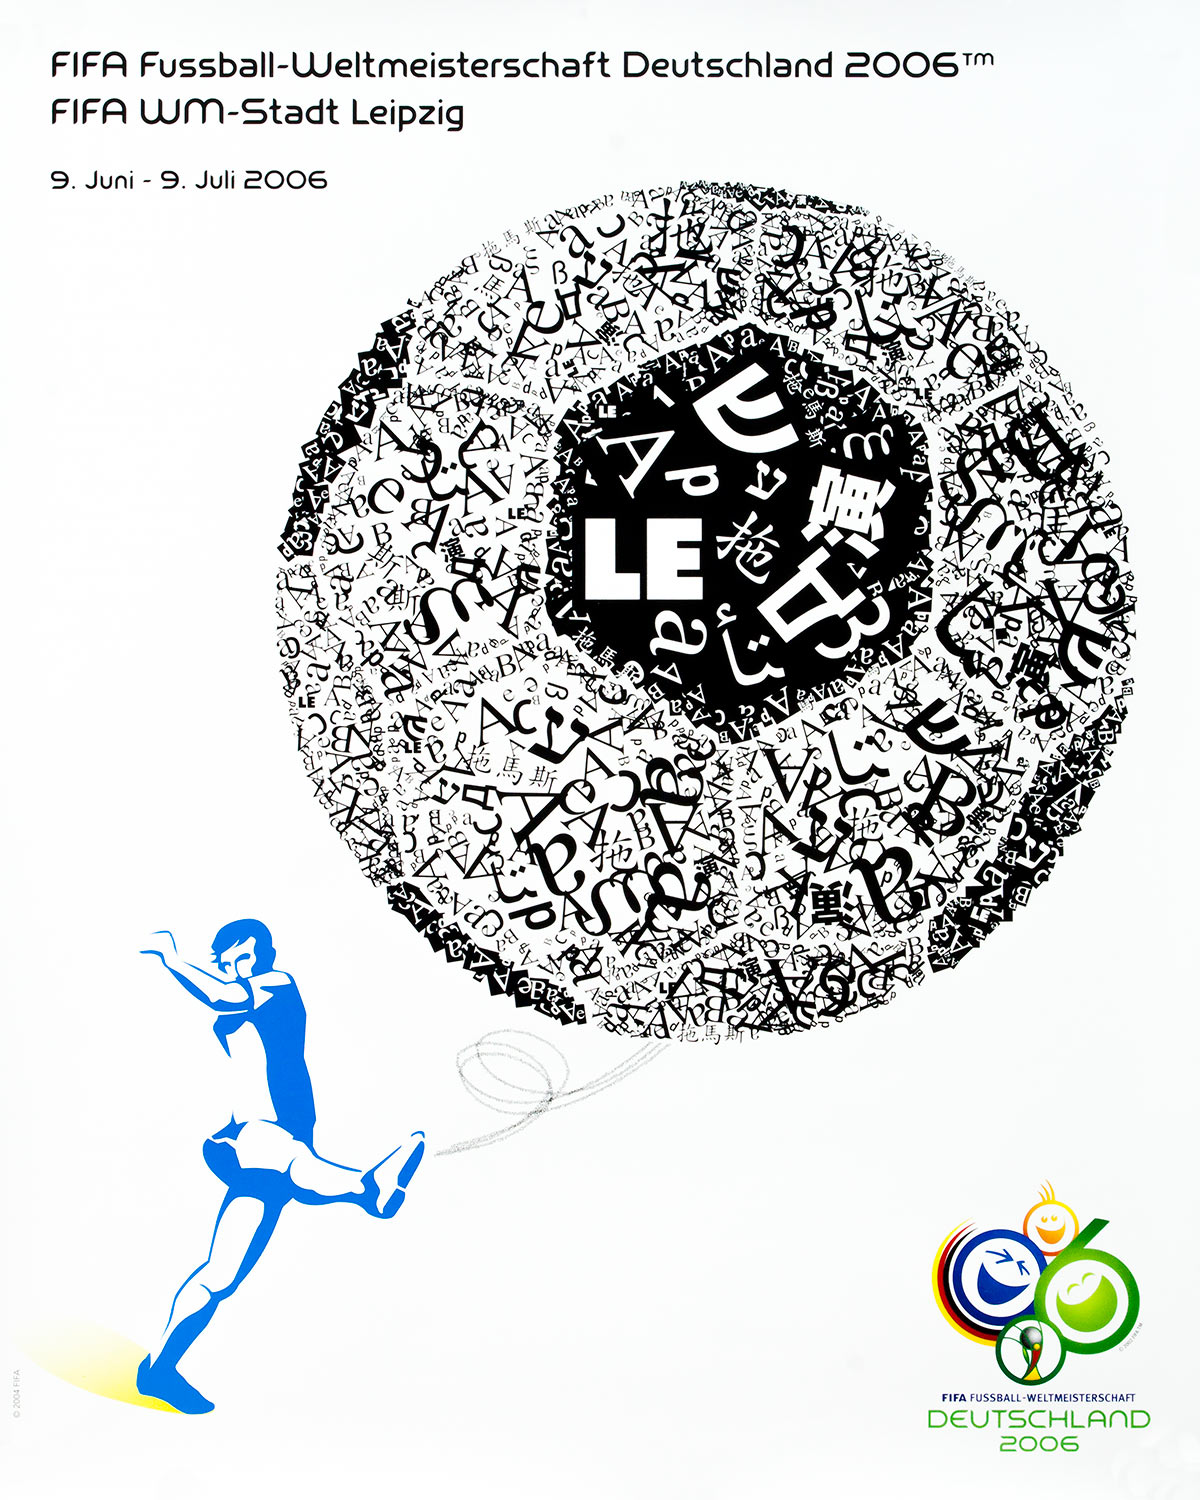 Plakat mit der Abbildung eines Fußballs, der aus verschieden Sprachen den Namen Leipzig ergibt.